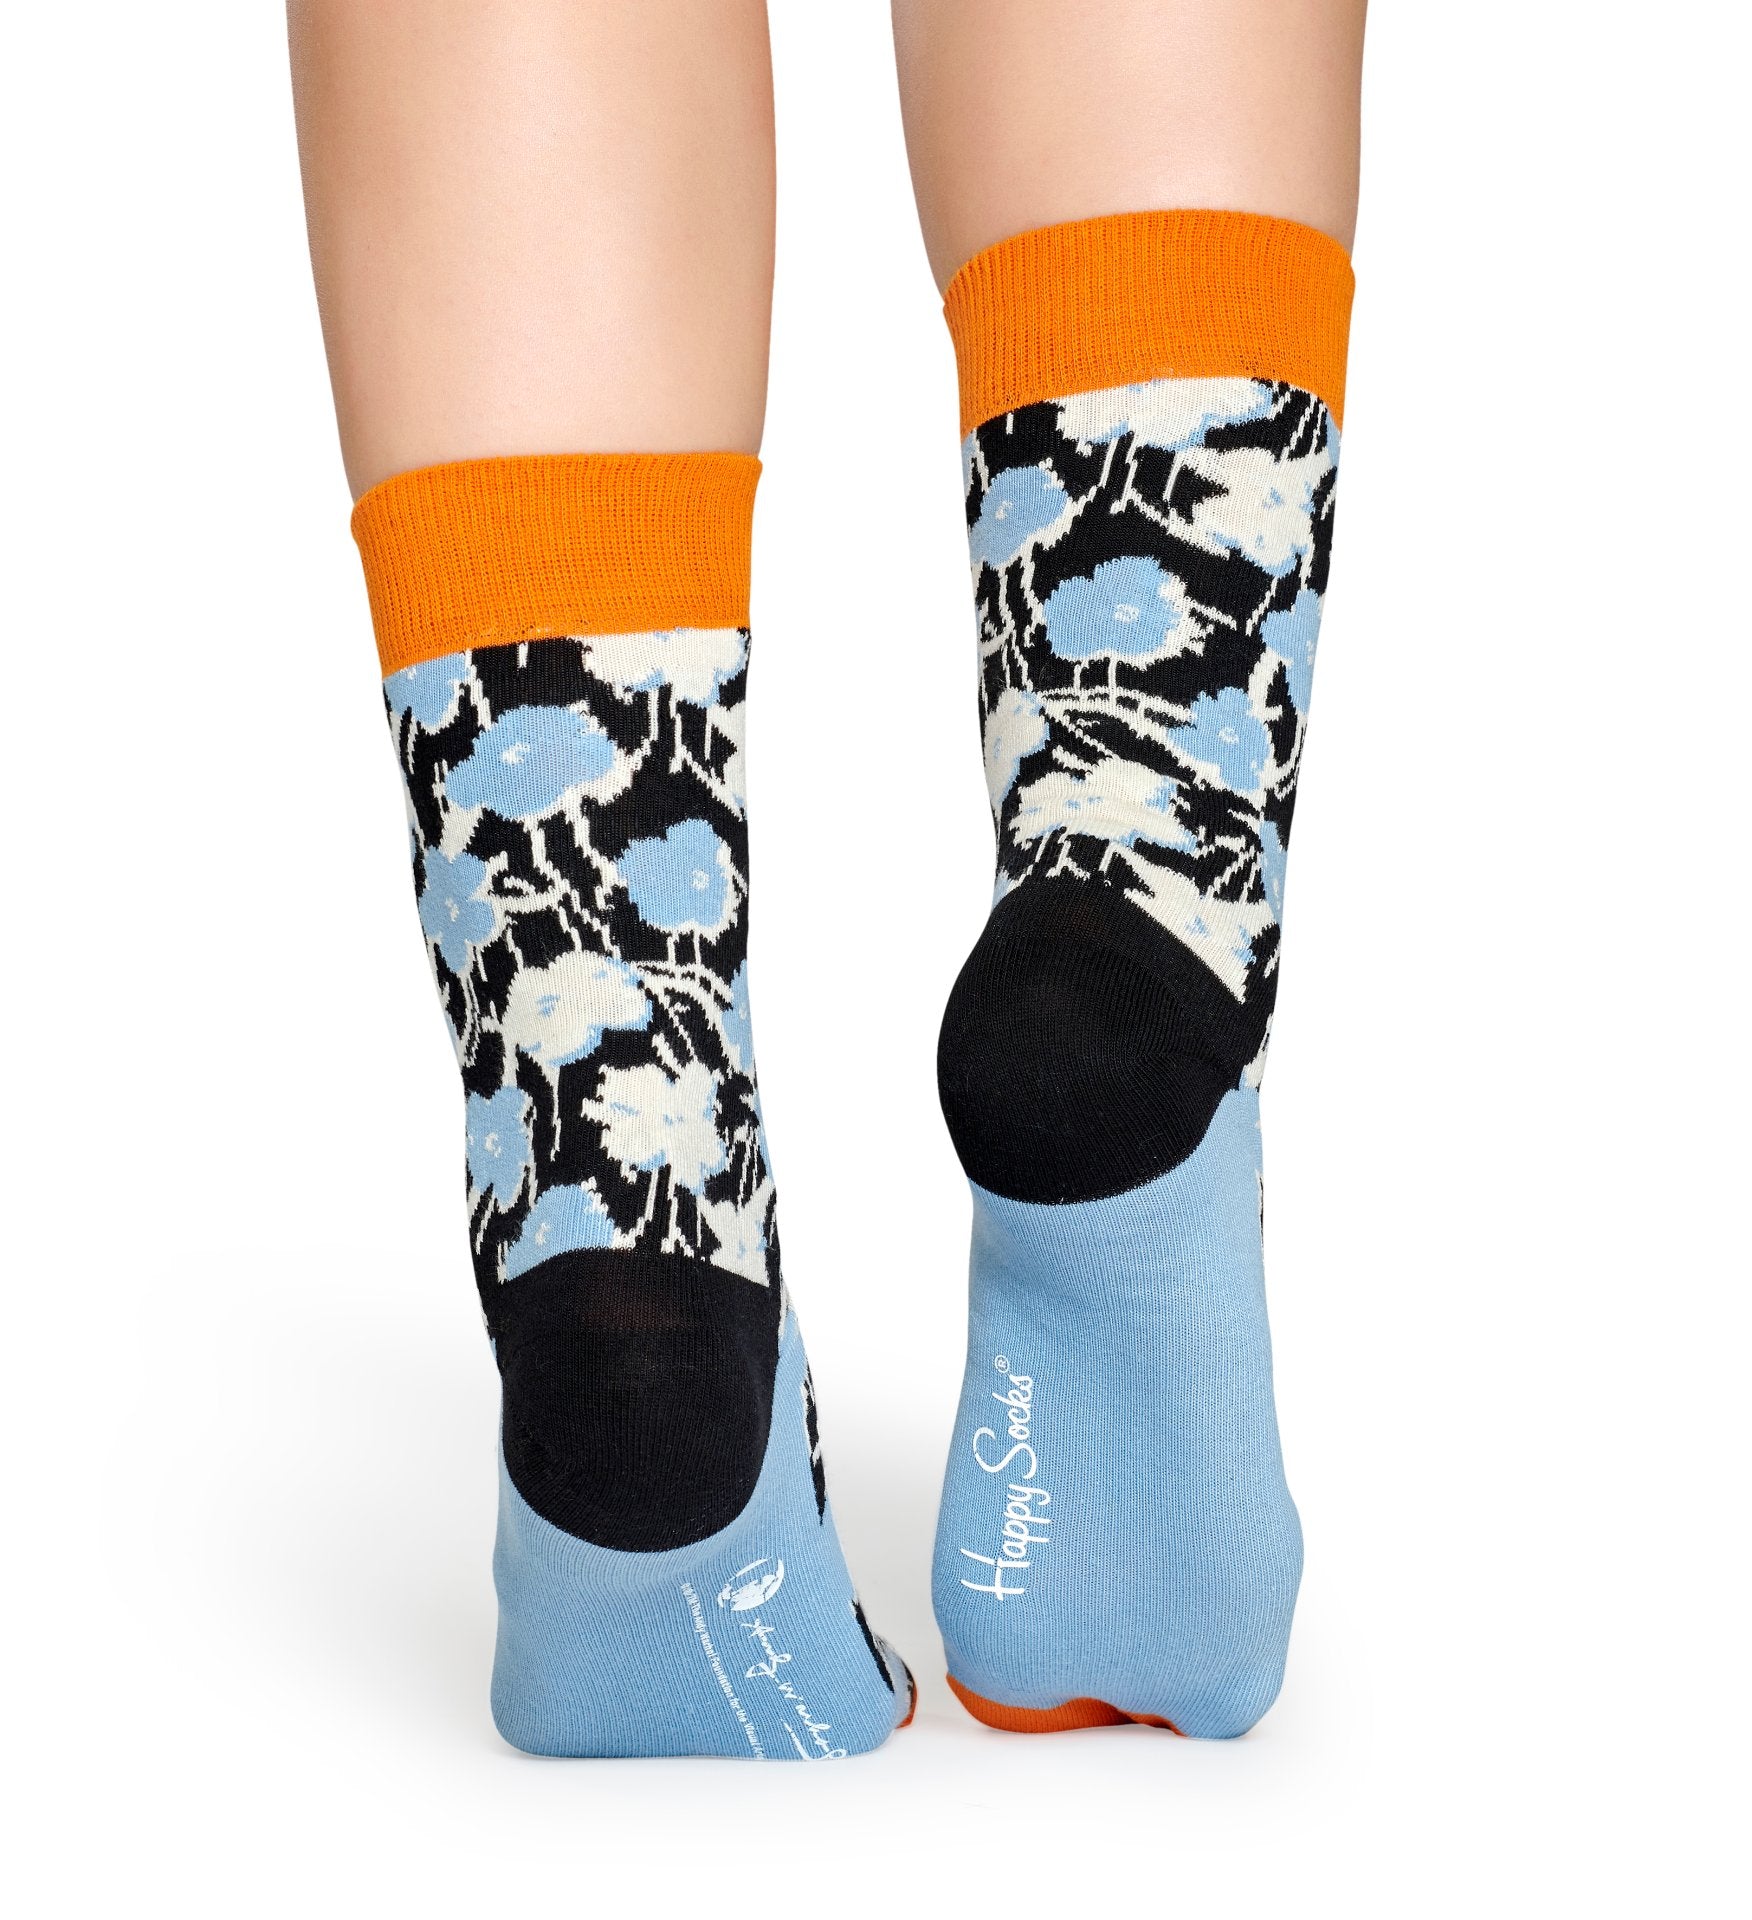 Světle modré ponožky s květinami z kolekce Happy Socks x Andy Warhol, vzor Flower